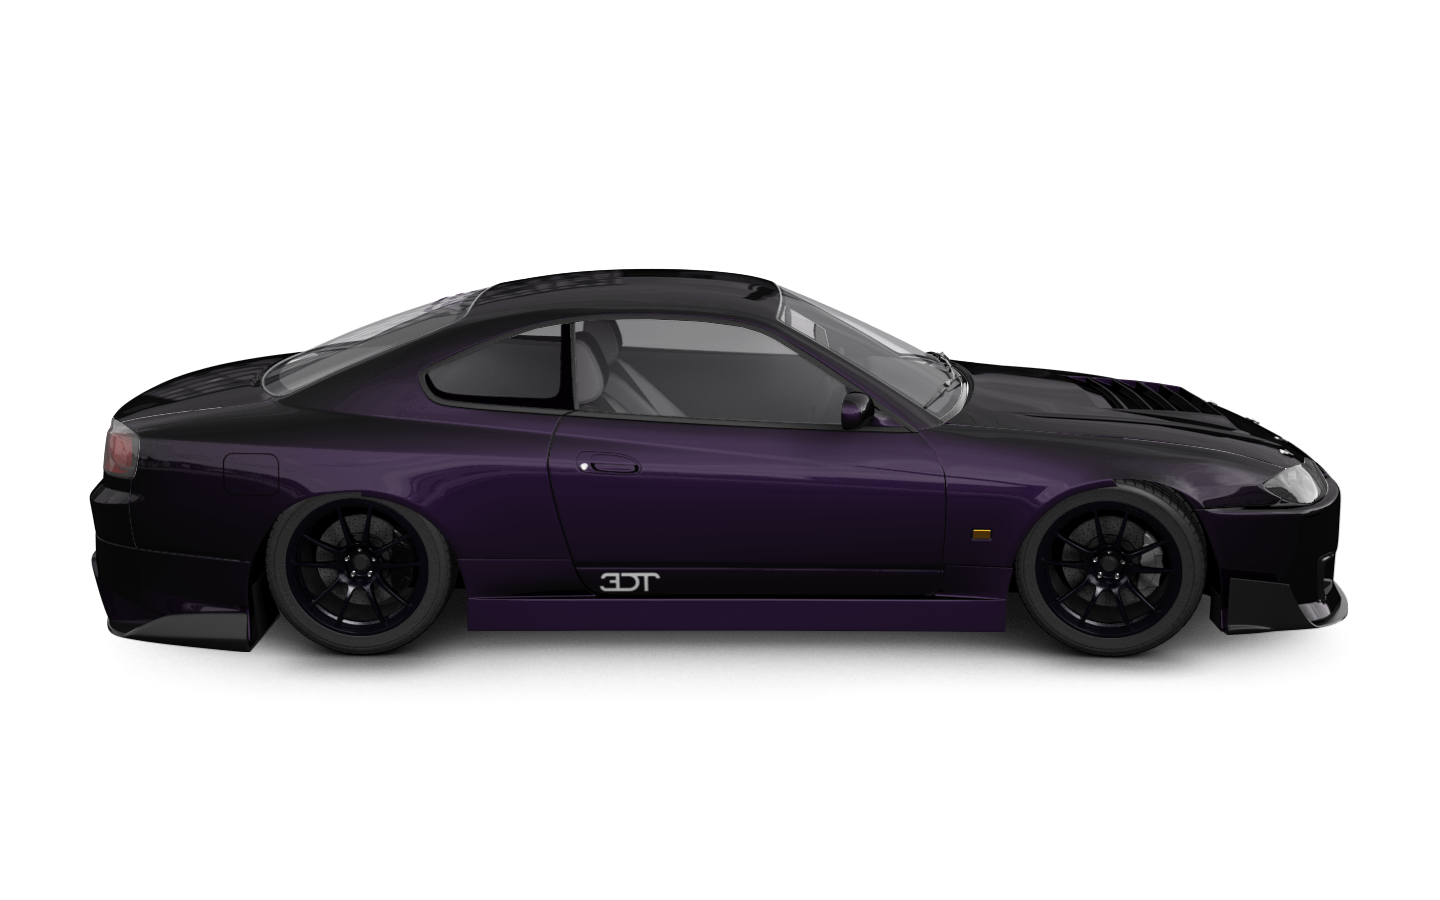 Nissan Silvia S15 2 Door Coupe 1999